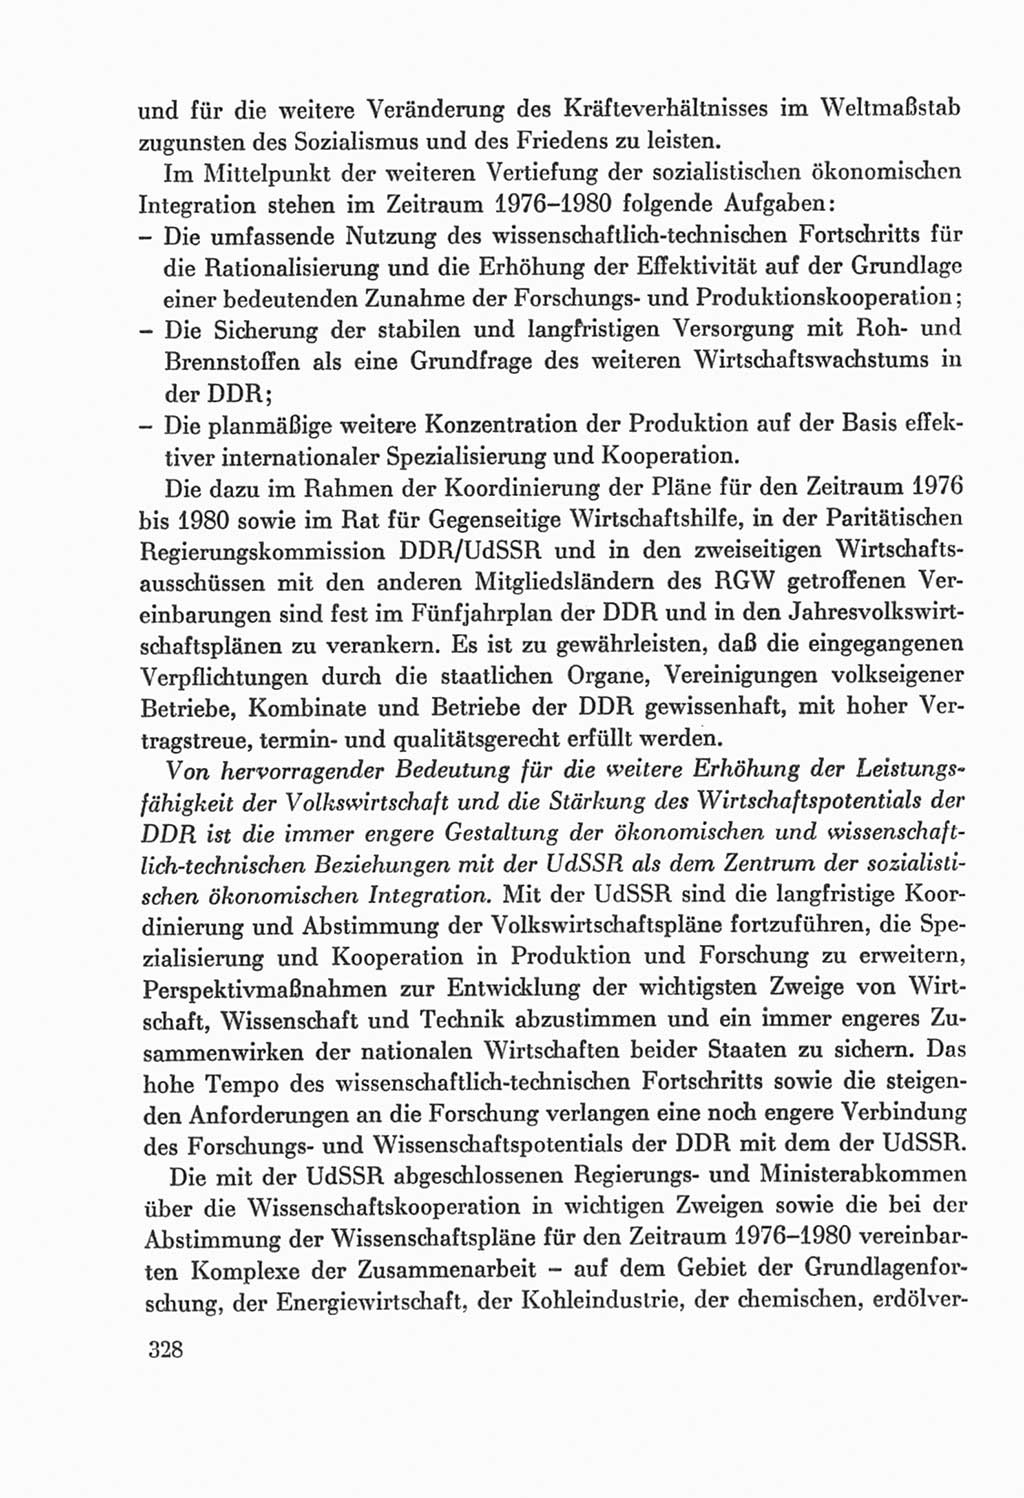 Protokoll der Verhandlungen des Ⅸ. Parteitages der Sozialistischen Einheitspartei Deutschlands (SED) [Deutsche Demokratische Republik (DDR)] 1976, Band 2, Seite 328 (Prot. Verh. Ⅸ. PT SED DDR 1976, Bd. 2, S. 328)